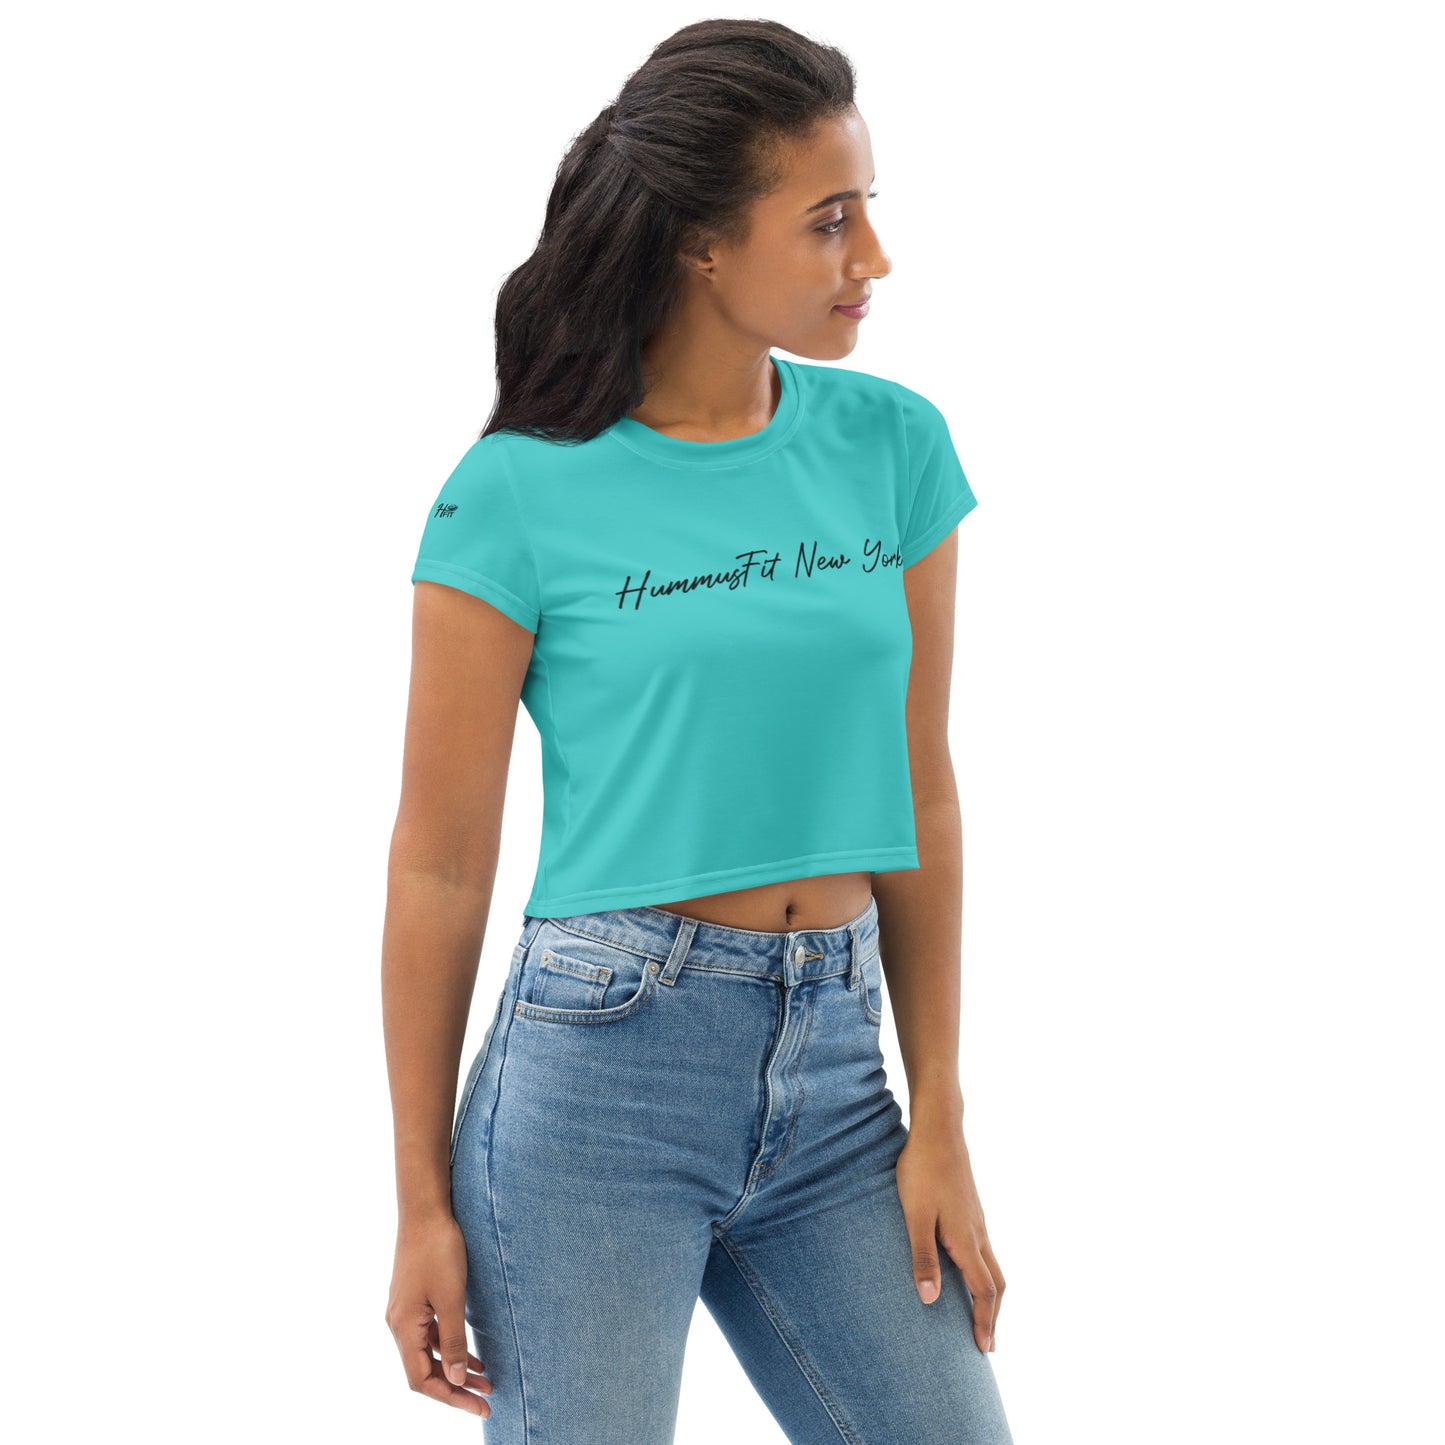 Camiseta corta con texto Hummus Fit en color turquesa